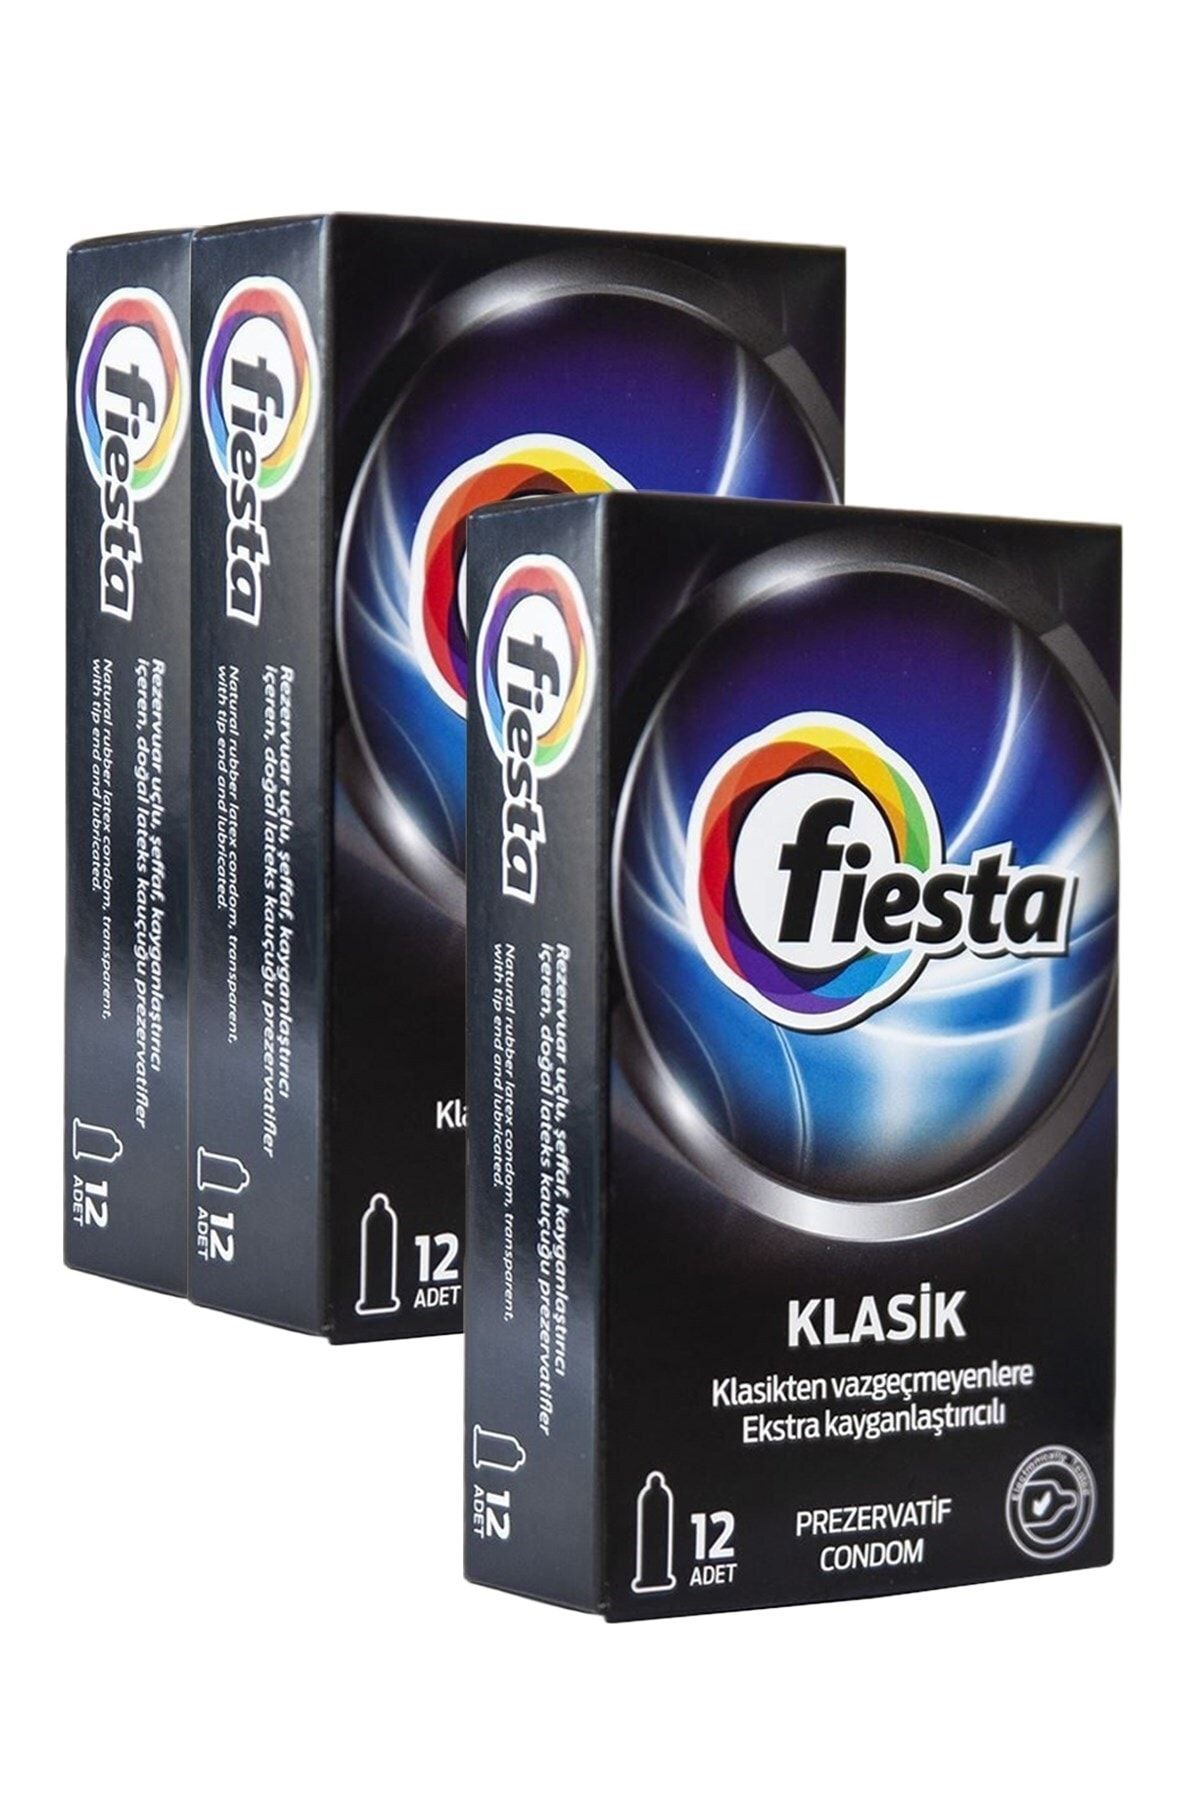 Fiesta Klasik Prezervatif 3'lü Ekonomik Paket